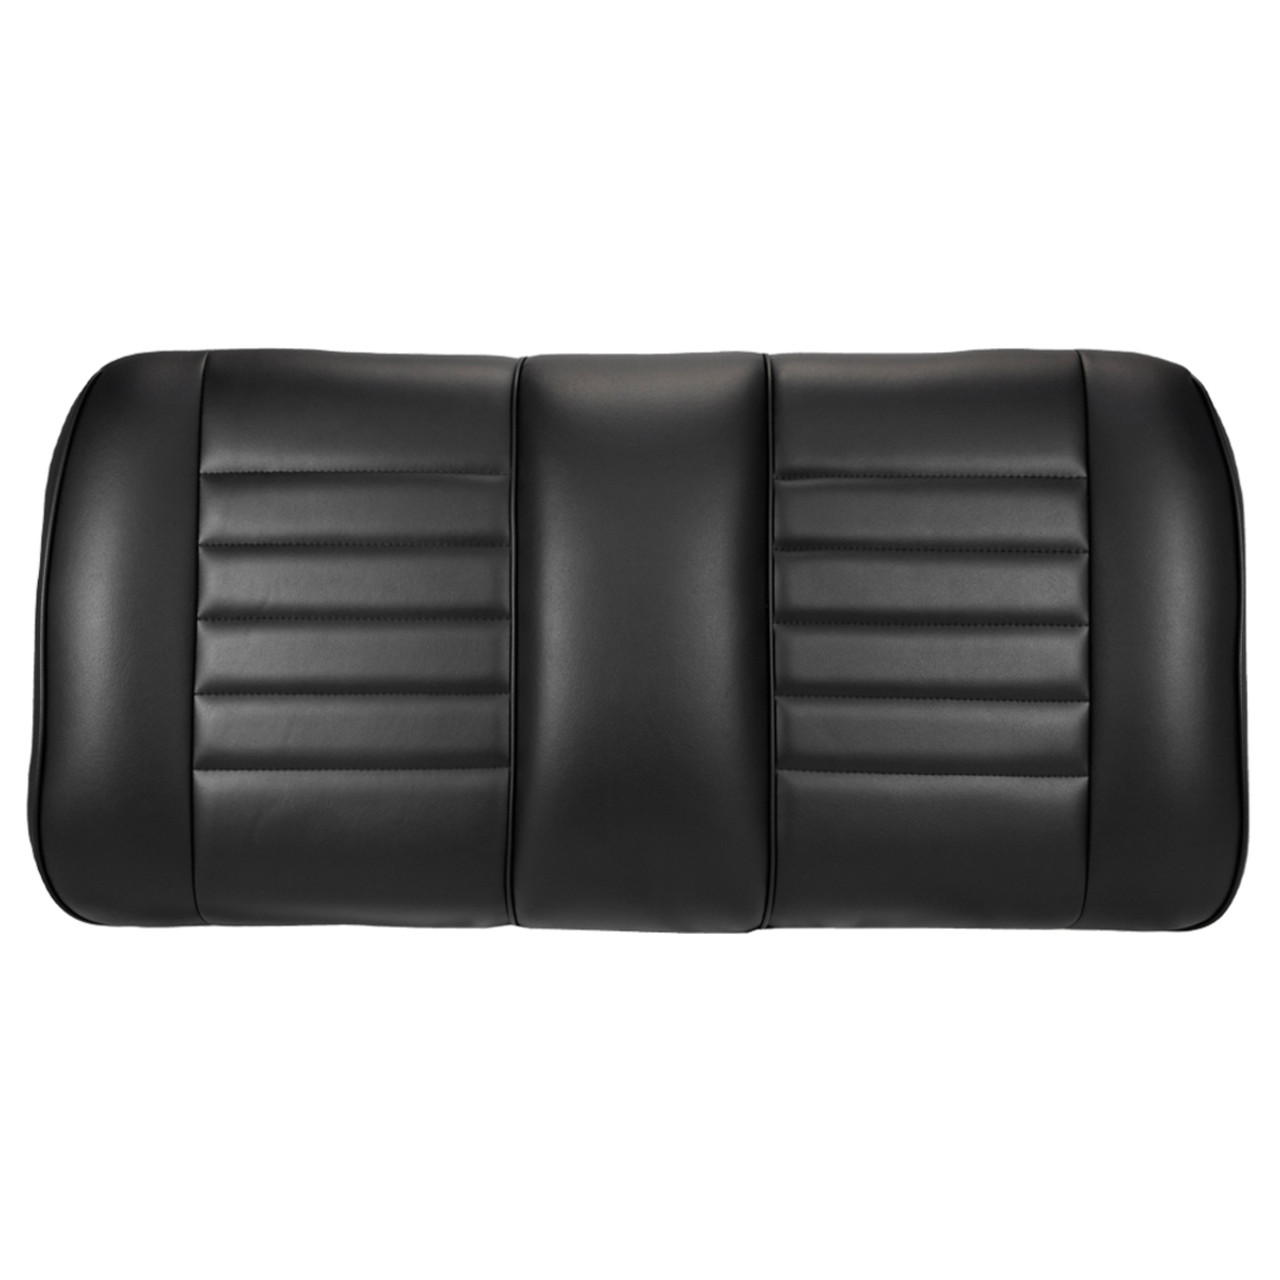 E-Z-GO TXT Premium OEM Style Front Replacement Black Seat Assemblies